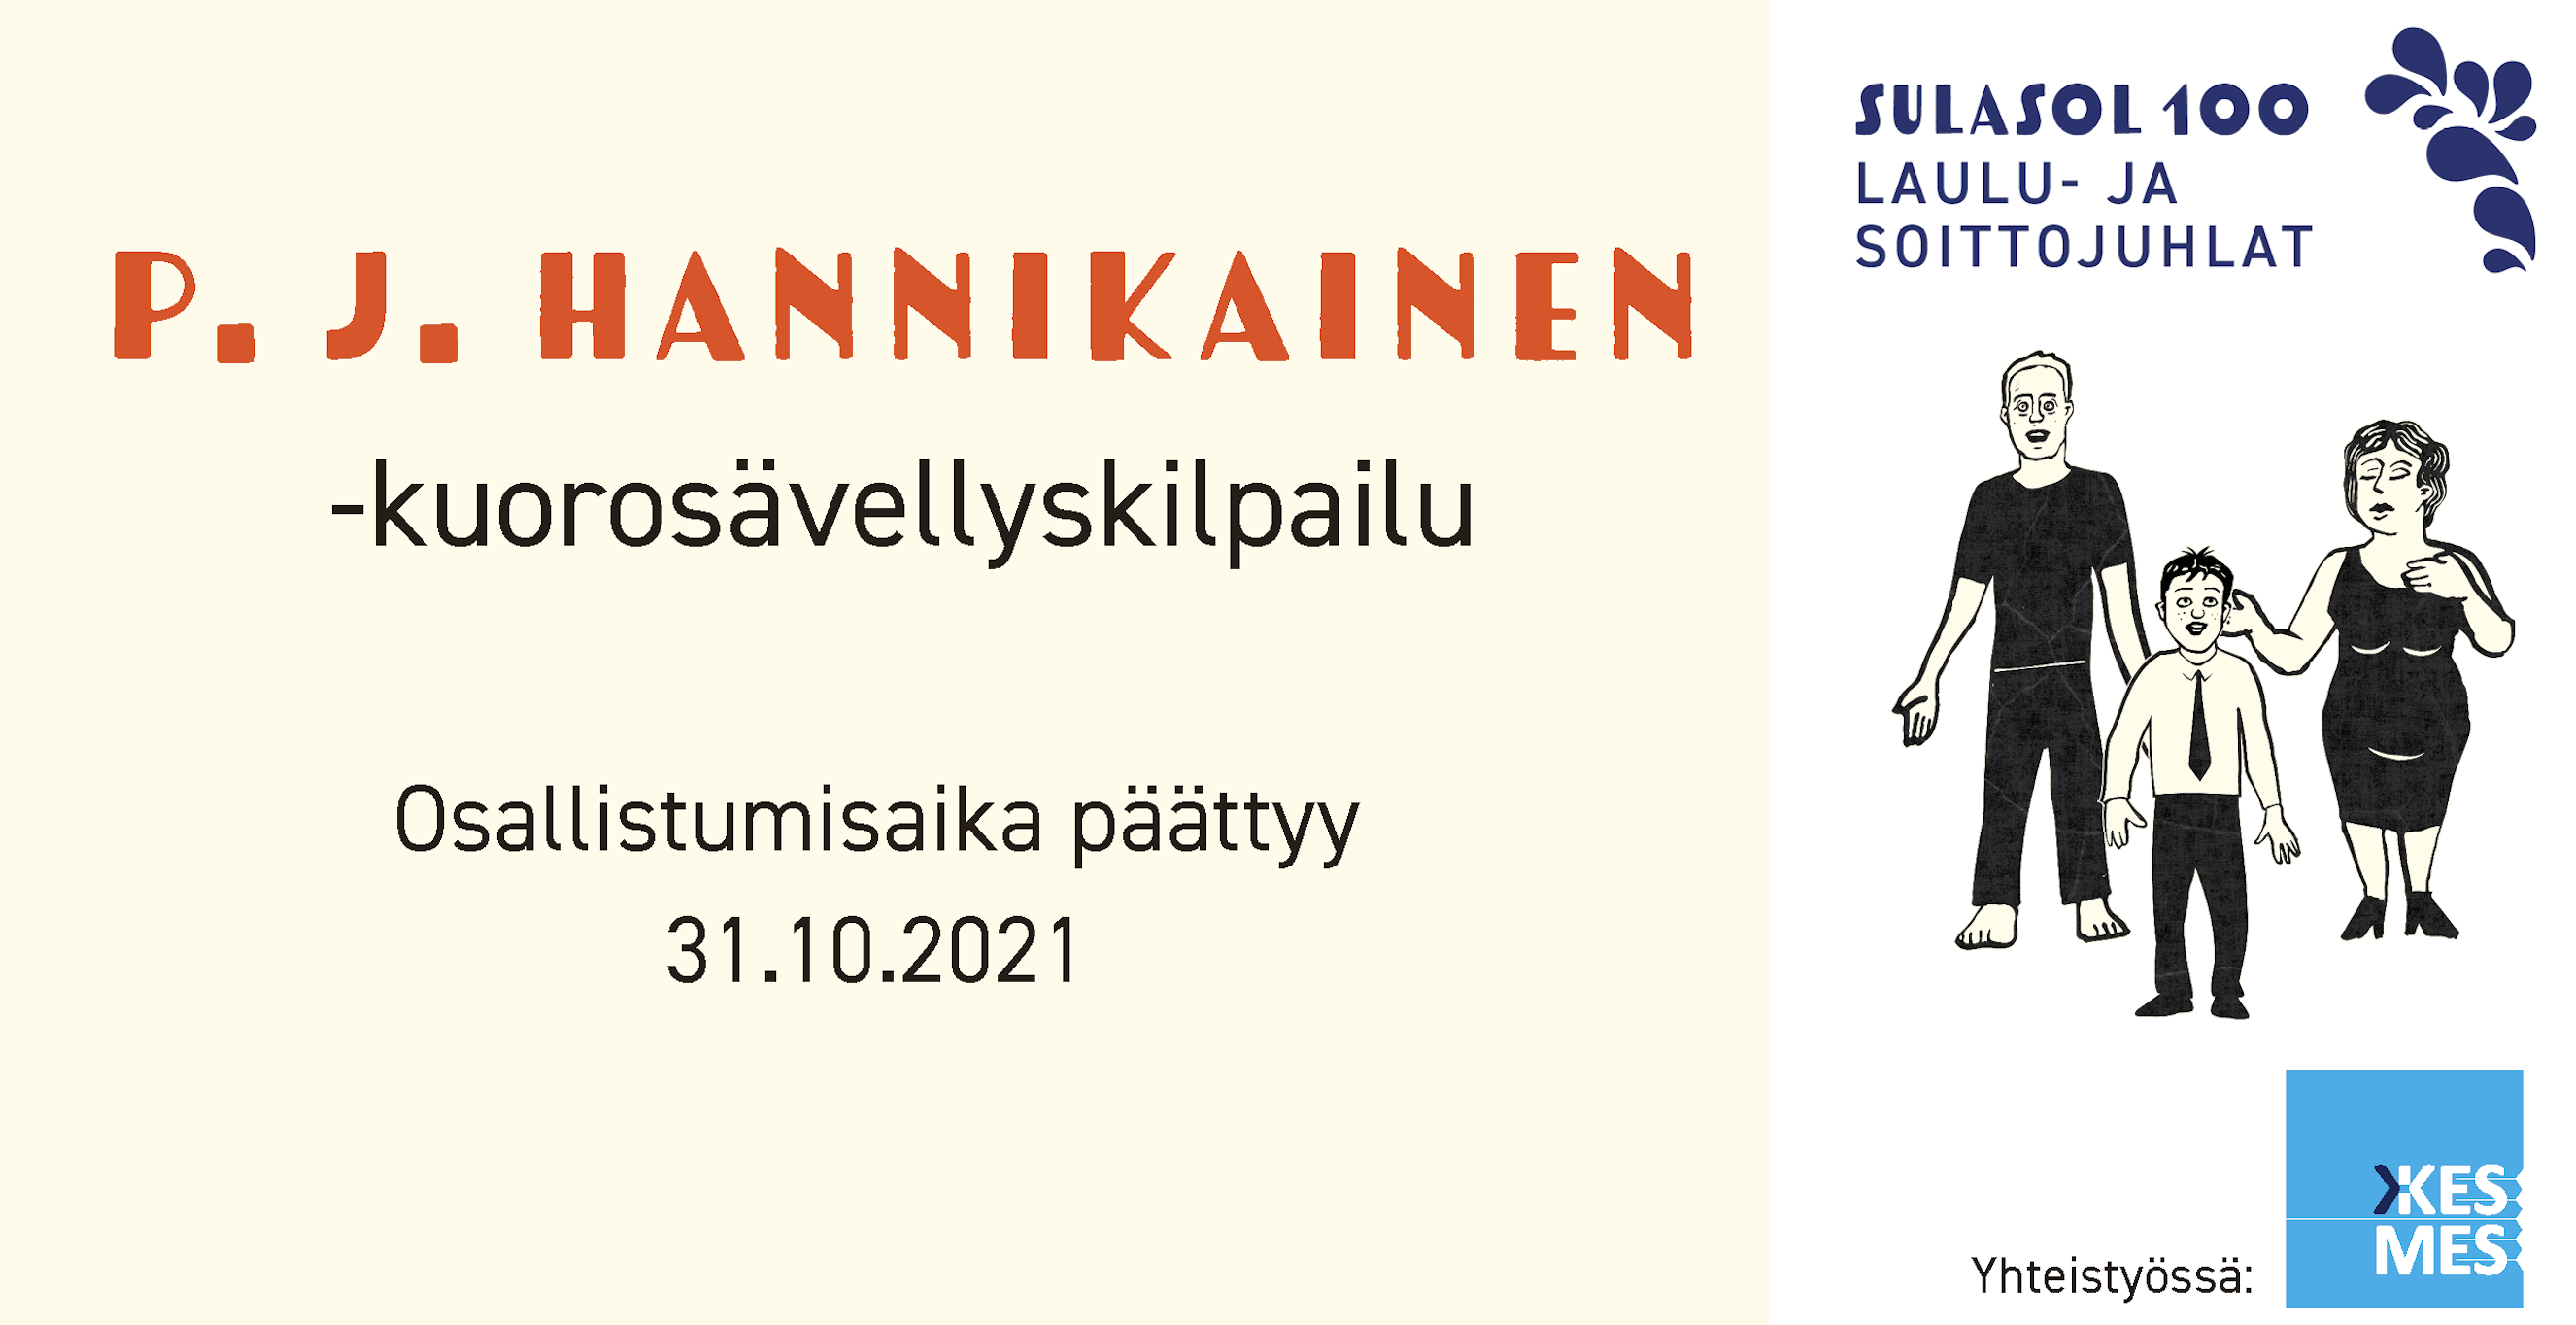 P. J. Hannikainen -kuorosävellyskilpailu